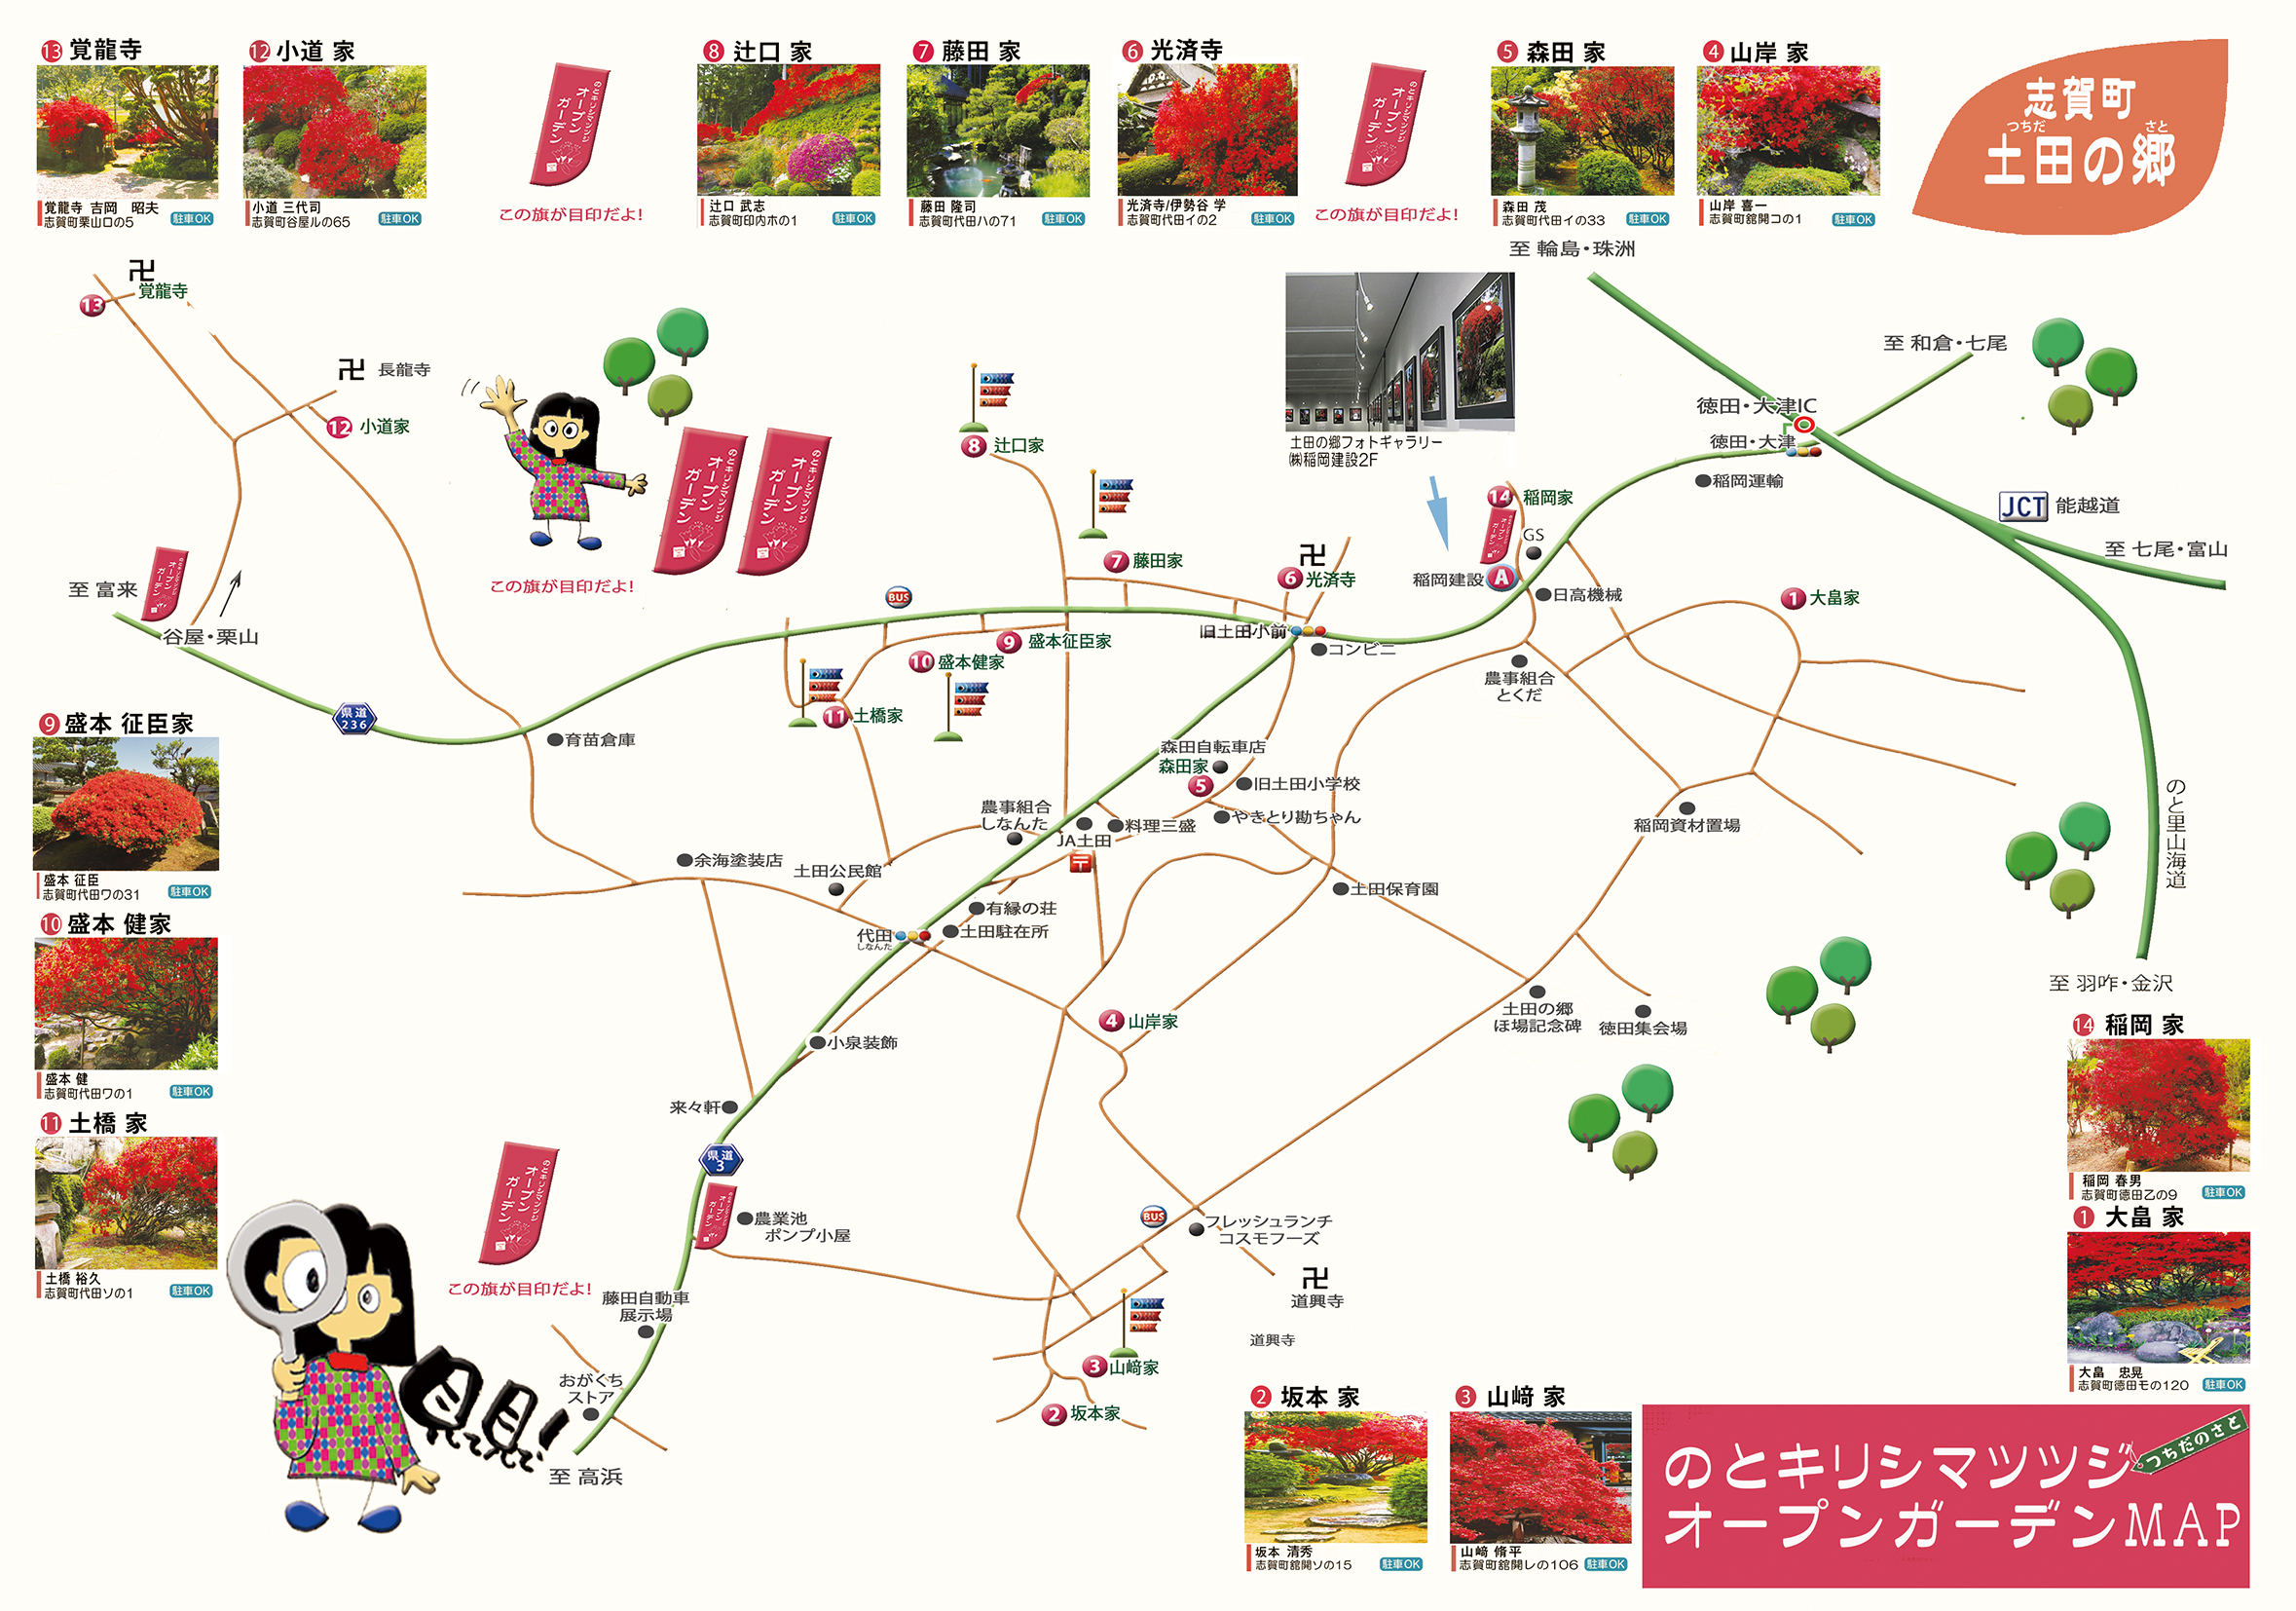 のとキリシマツツジ土田の郷MAP